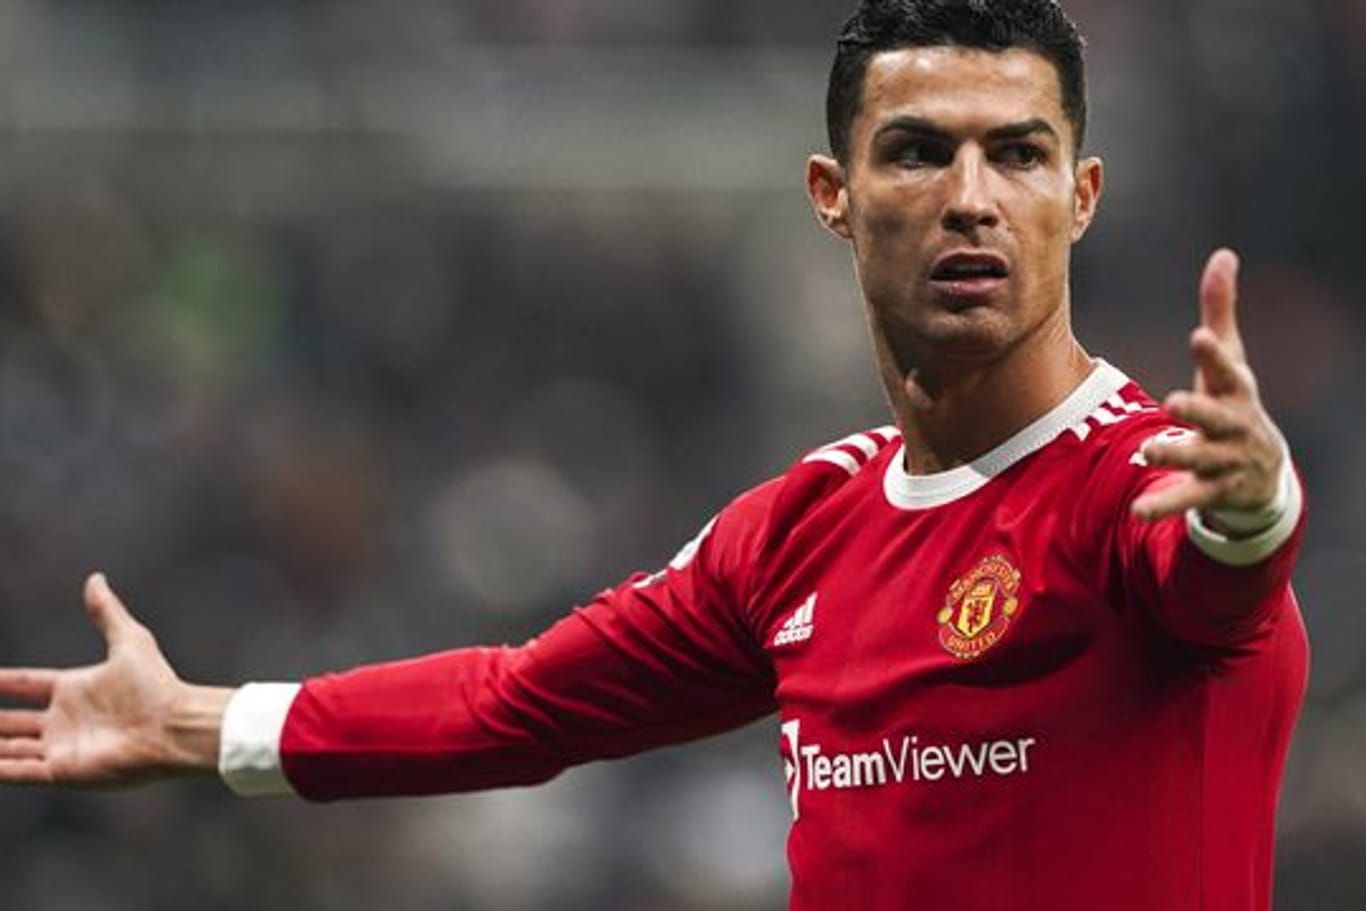 Cristiano Ronaldo spielt derzeit für Manchester United in der Premier League.